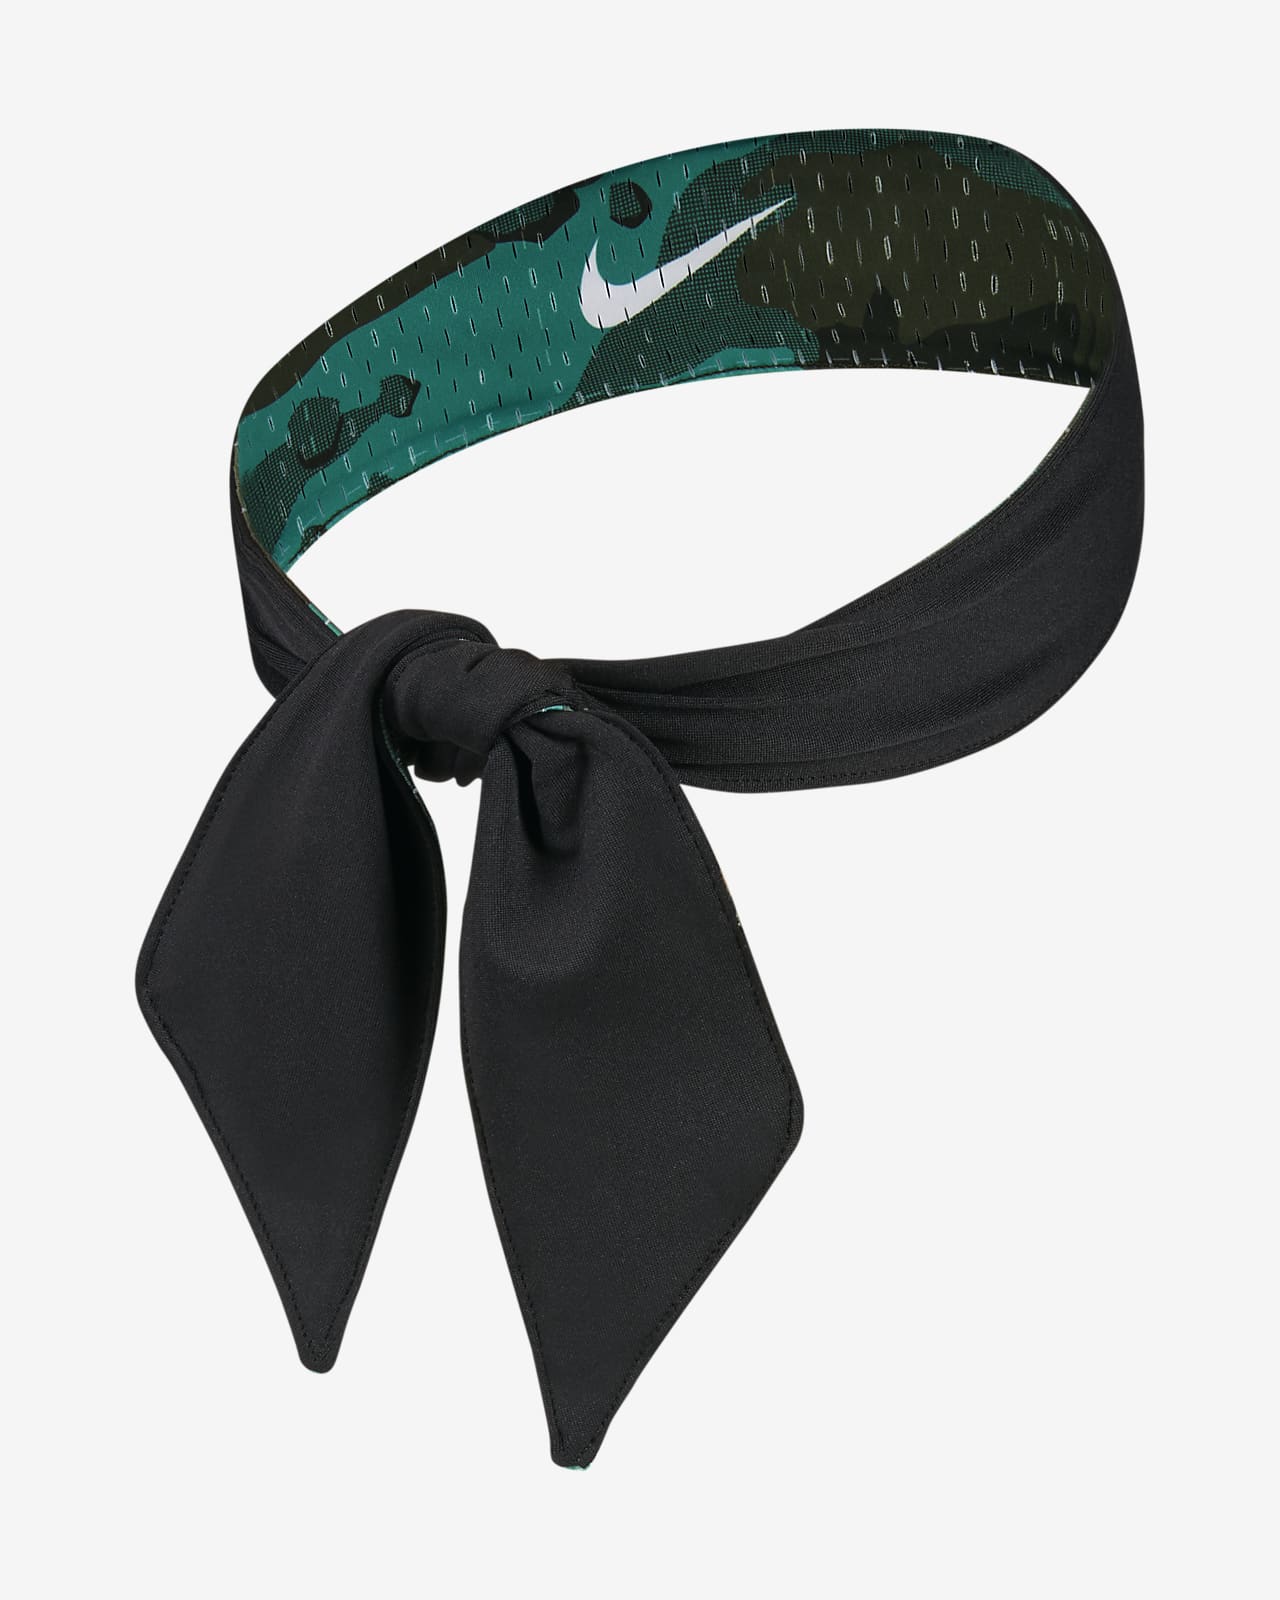 Nike Dri-FIT Men's Reversible Printed Tie.